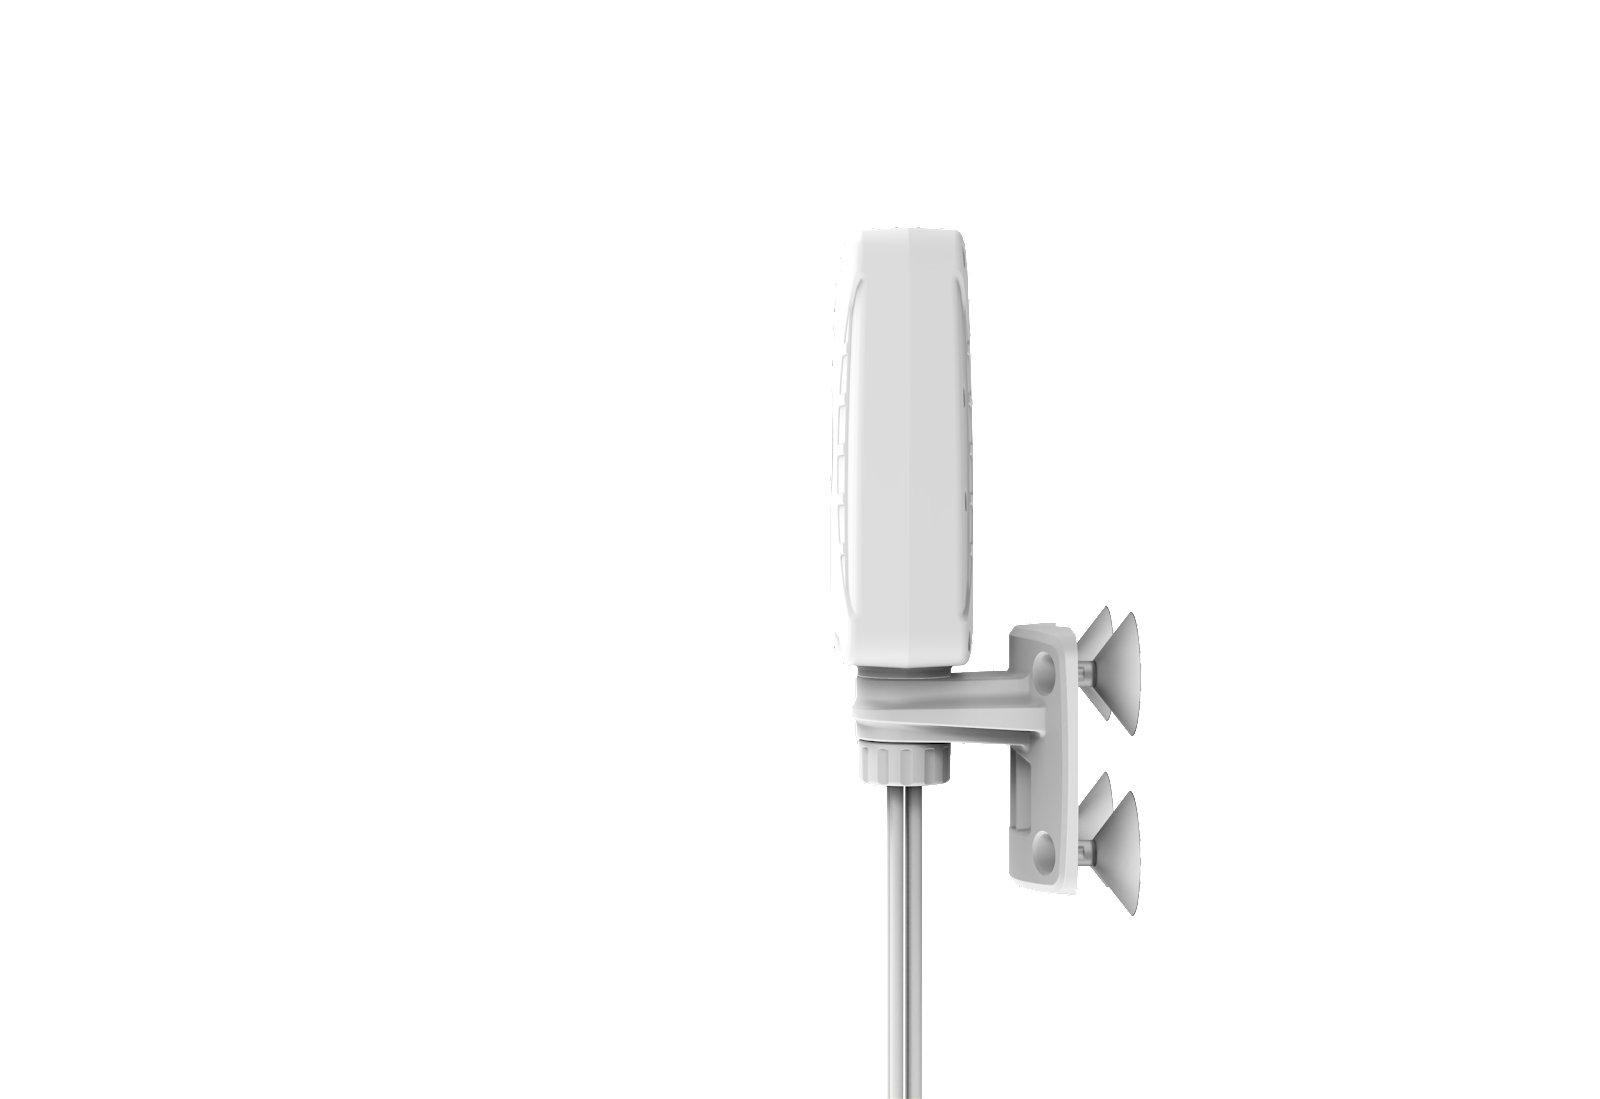 Poynting XPOL-1-5G 4x4 Antenna Side View